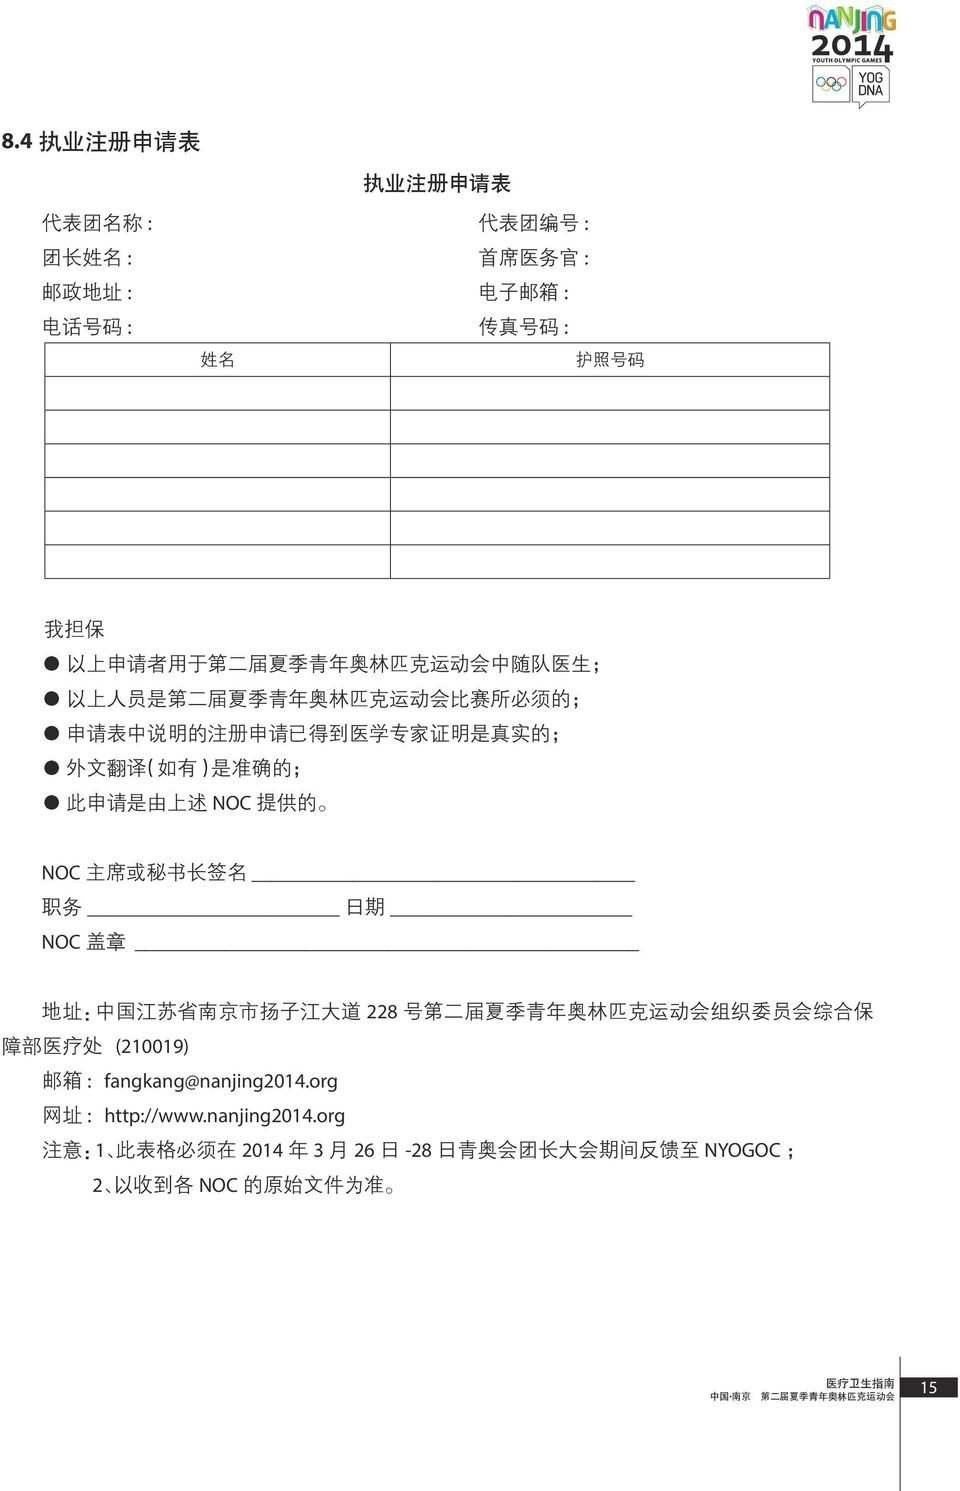 的 NOC 主 席 或 秘 书 长 签 名 职 务 日 期 NOC 盖 章 地 址 : 中 国 江 苏 省 南 京 市 扬 子 江 大 道 228 号 第 二 届 夏 季 青 年 奥 林 匹 克 运 动 会 组 织 委 员 会 综 合 保 障 部 医 疗 处 (210019) 邮 箱 : fangkang@nanjing2014.